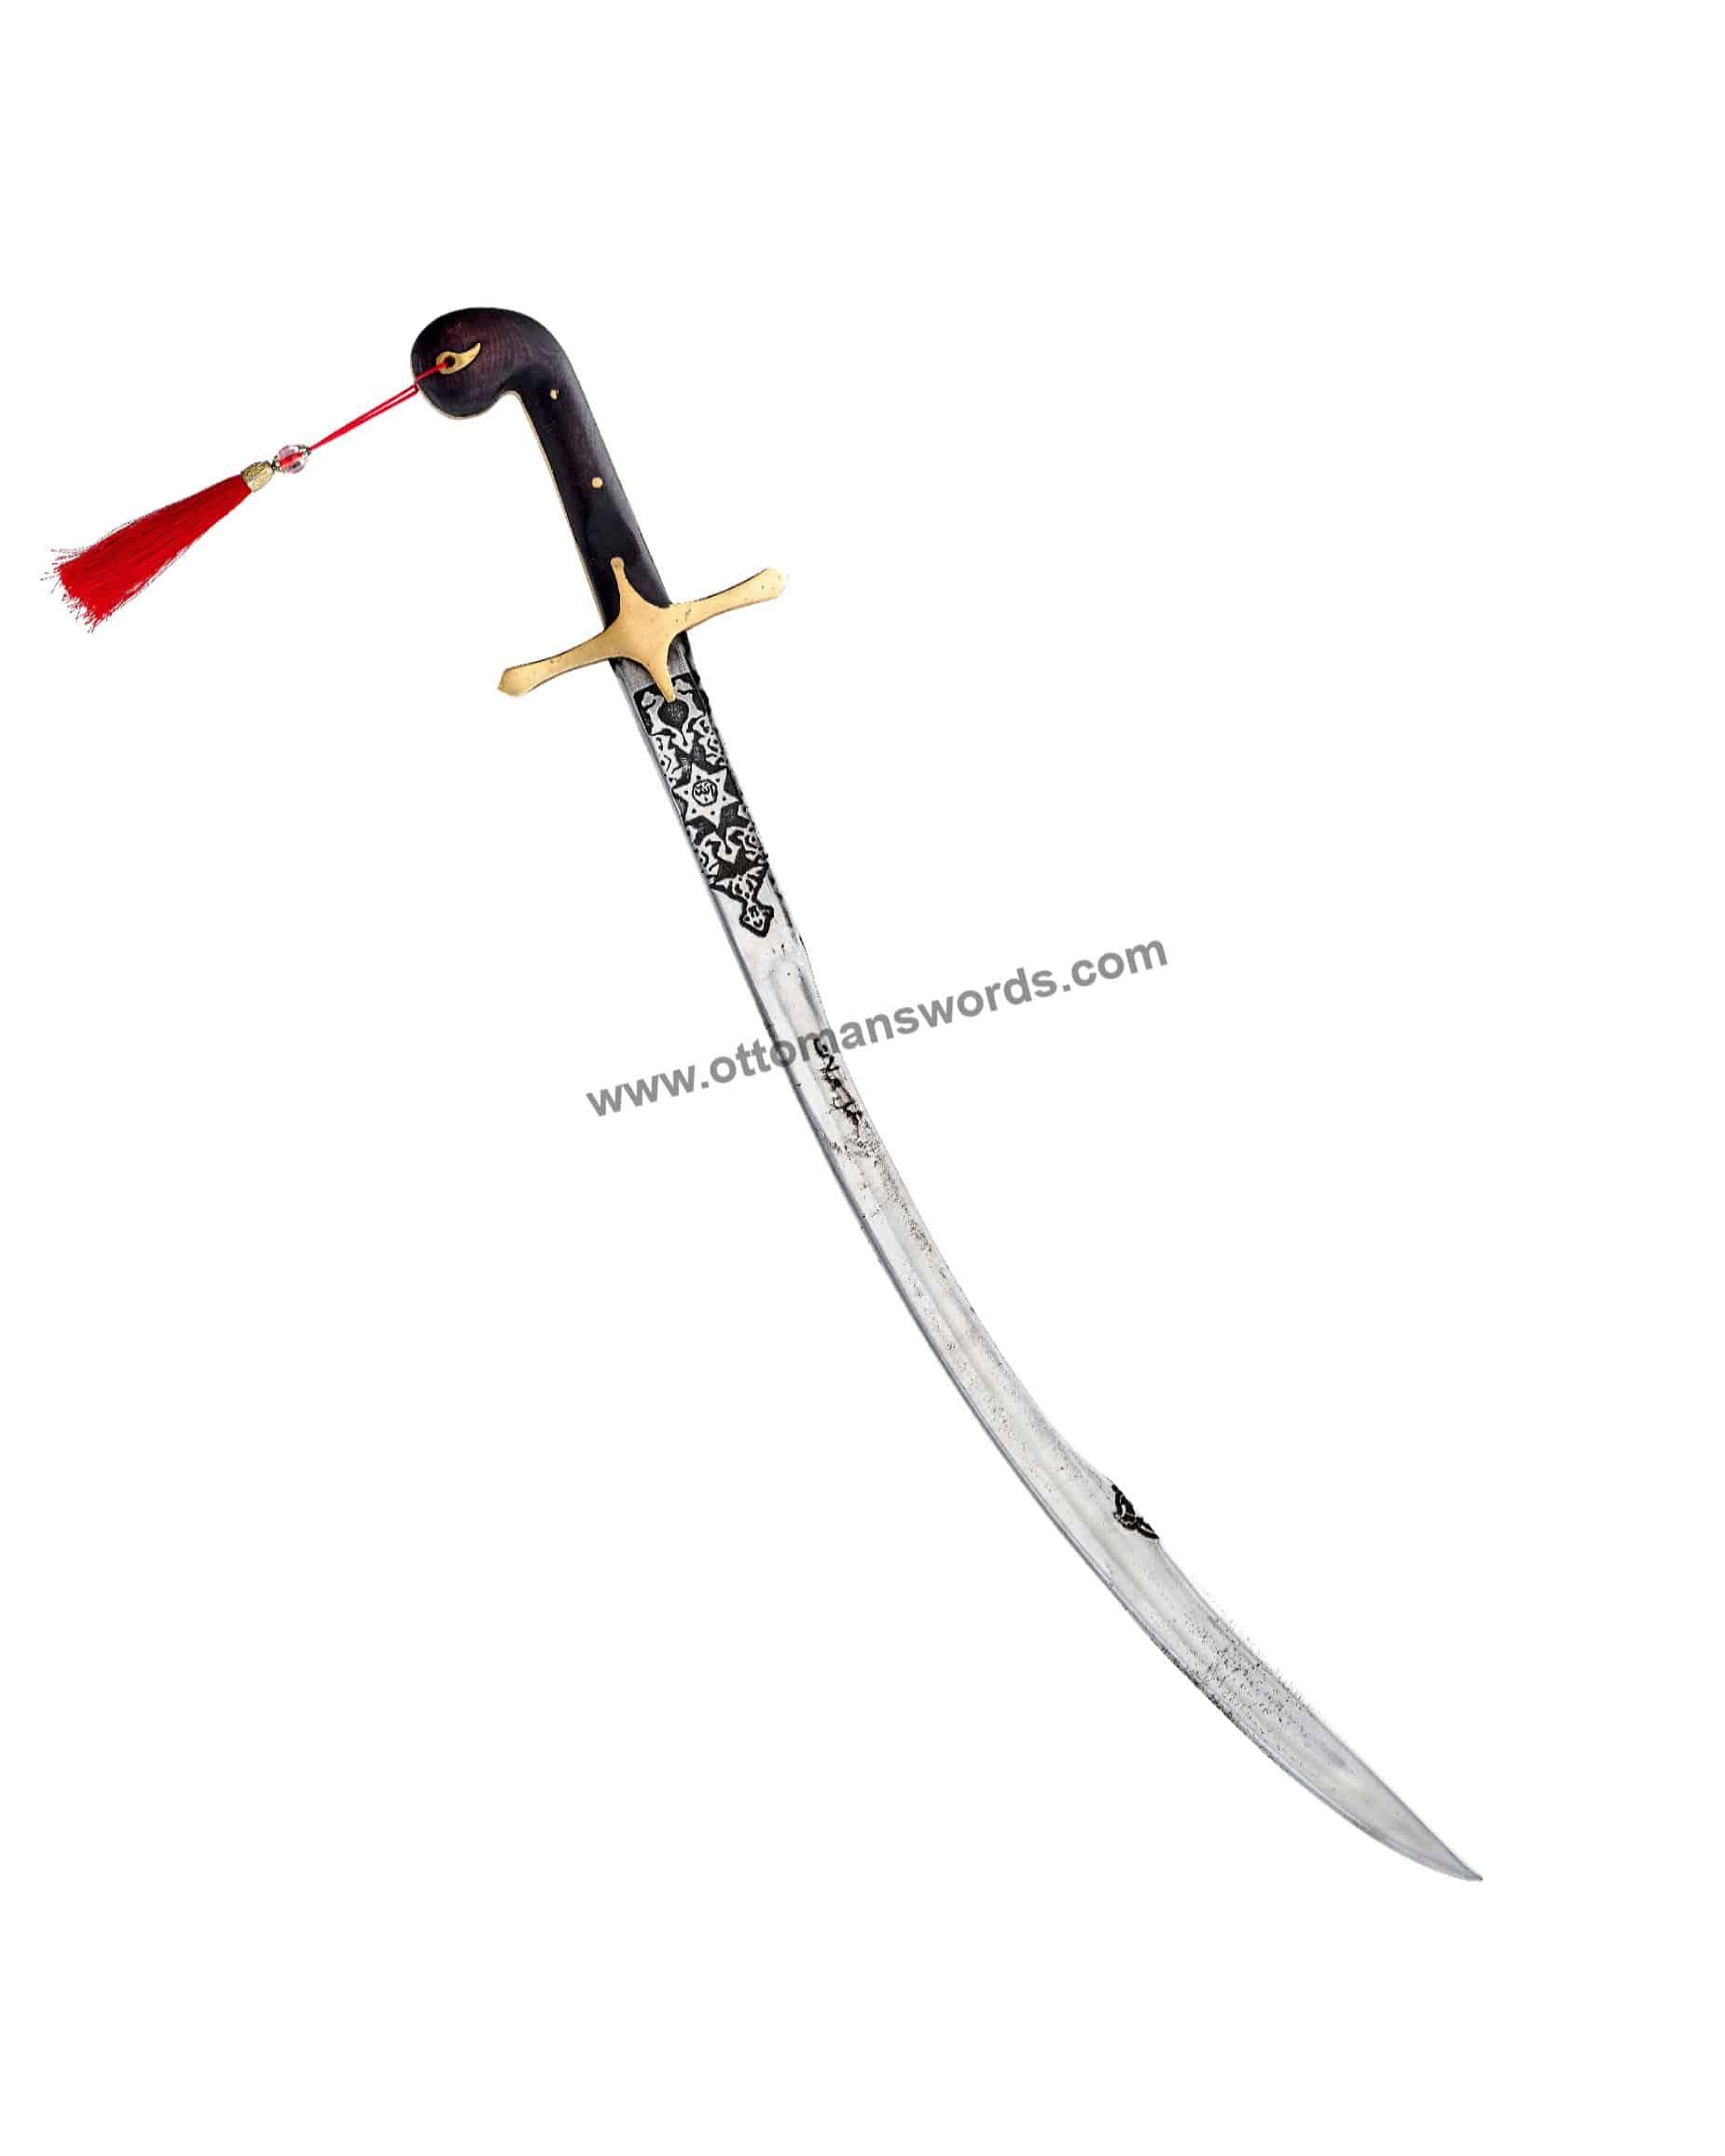 forge a sword ottoman swords (4)